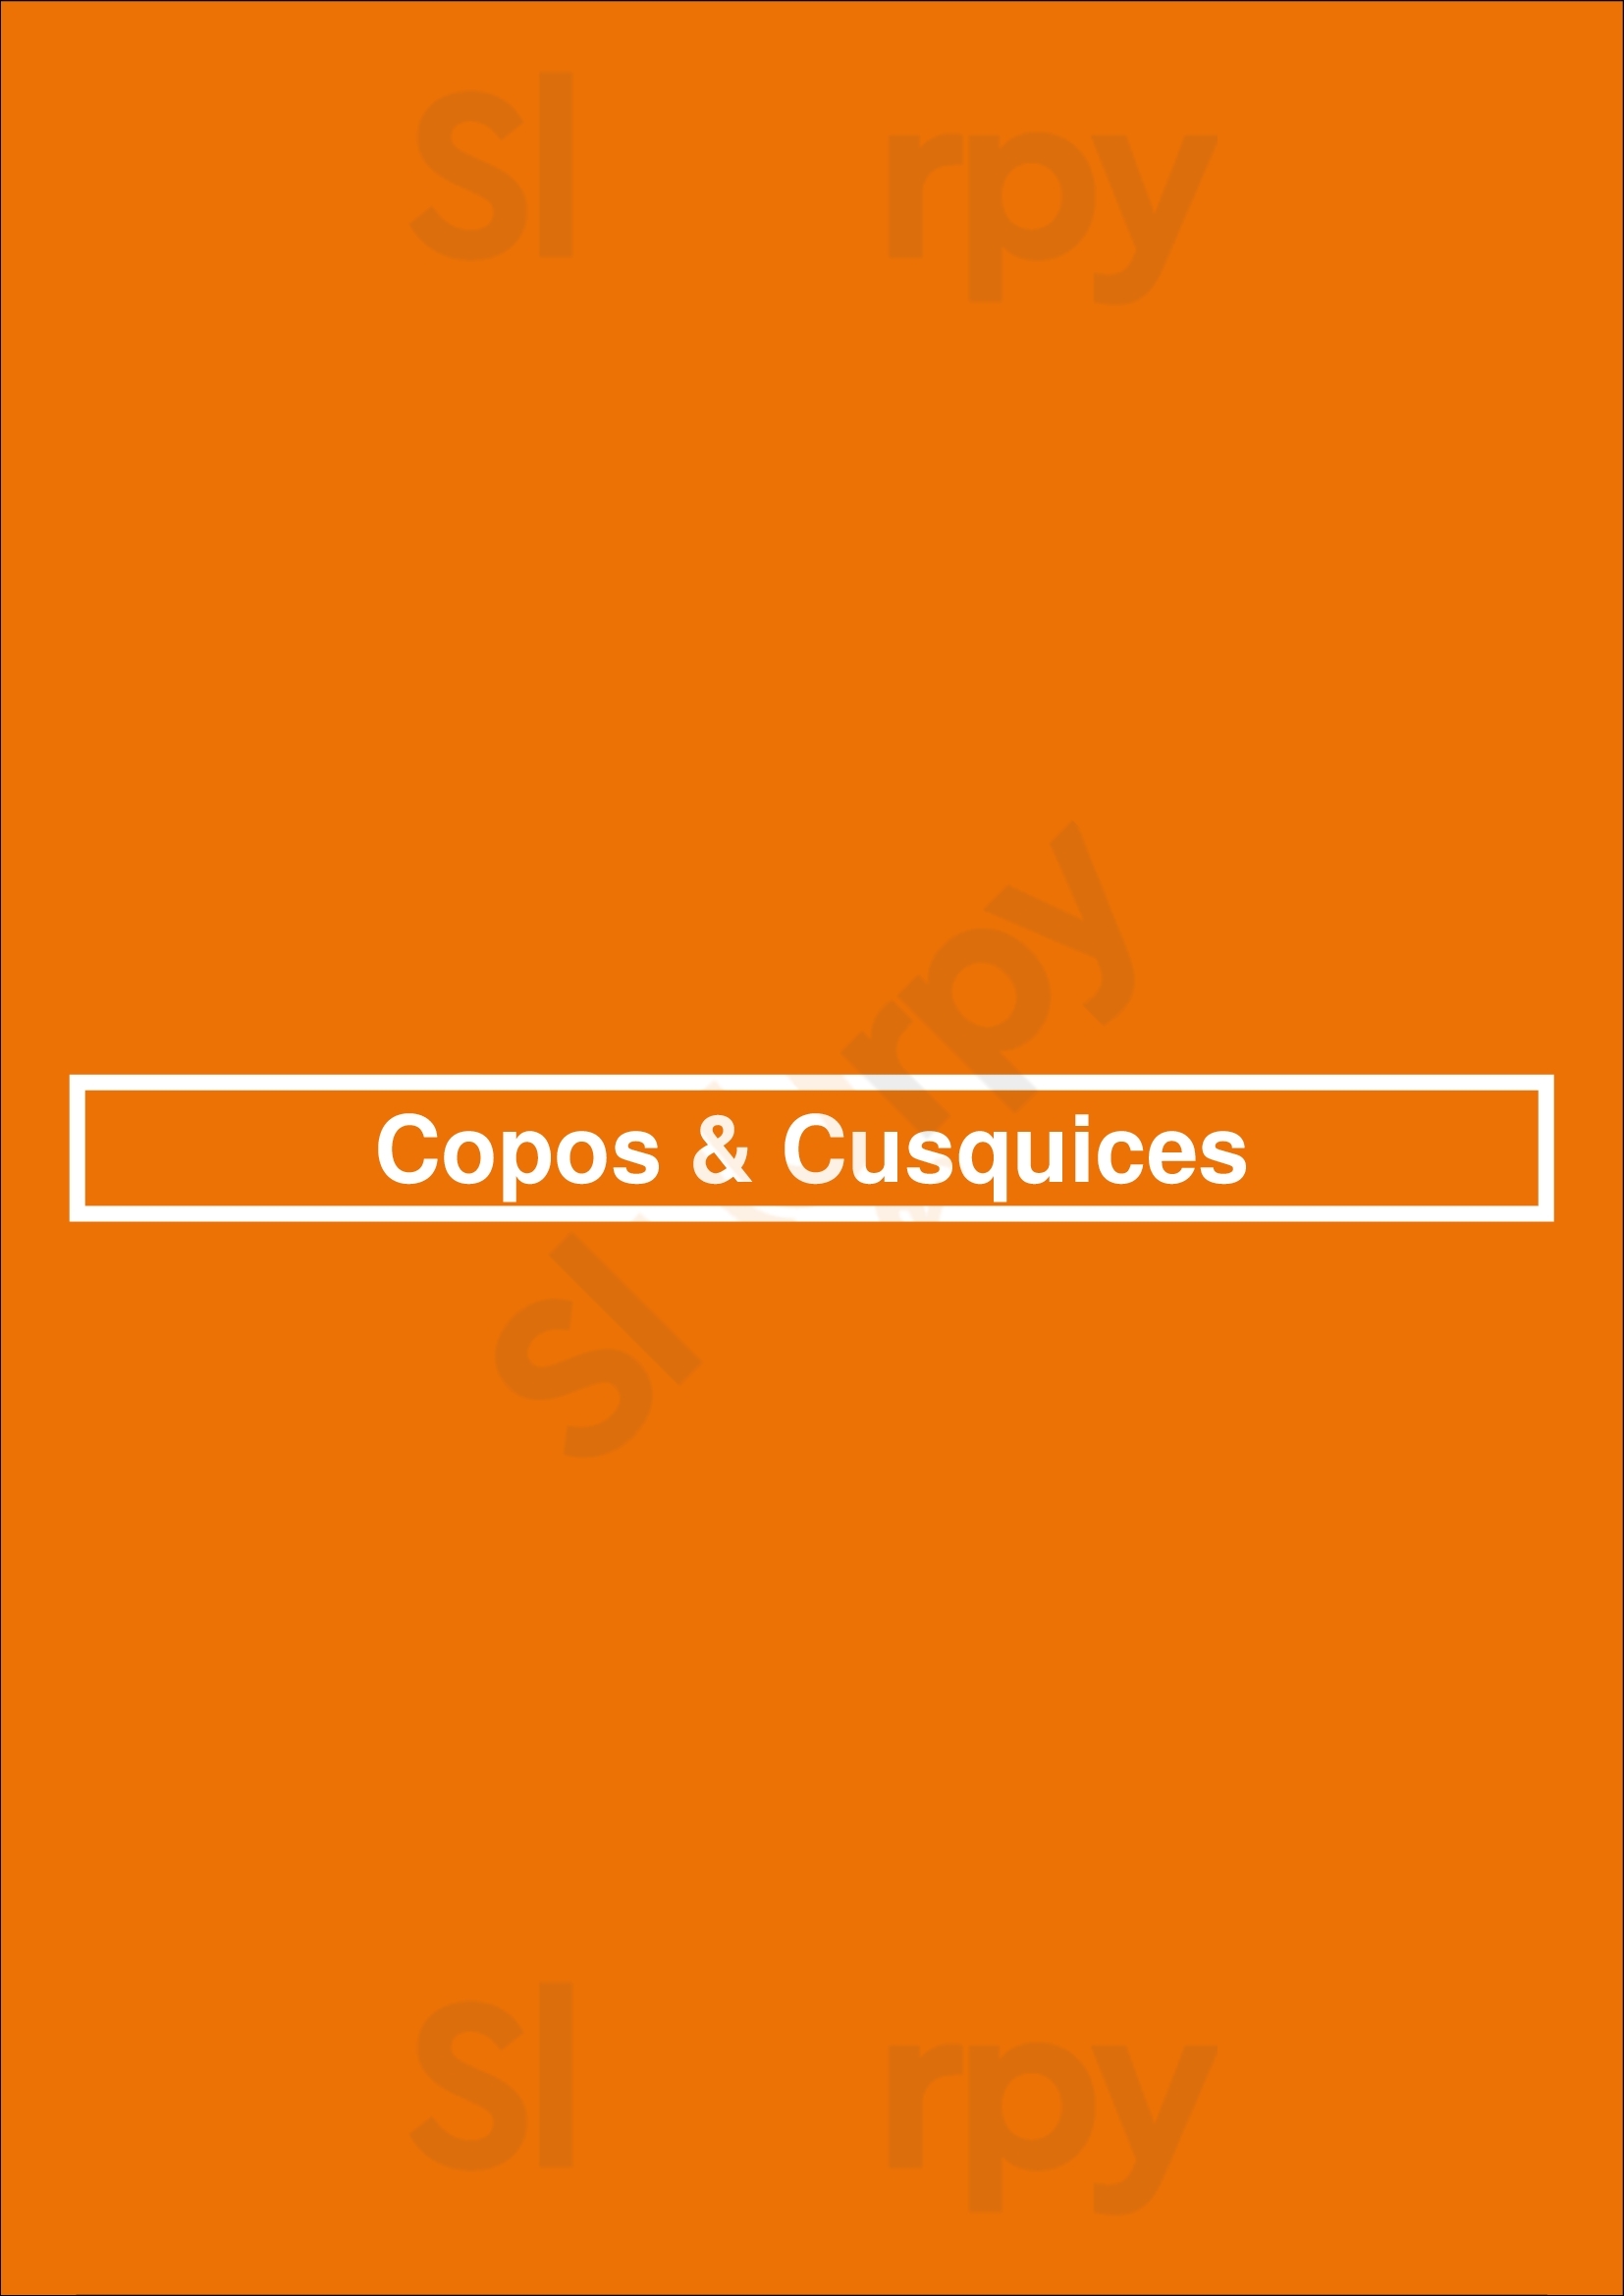 Copos & Cusquices Porto Menu - 1